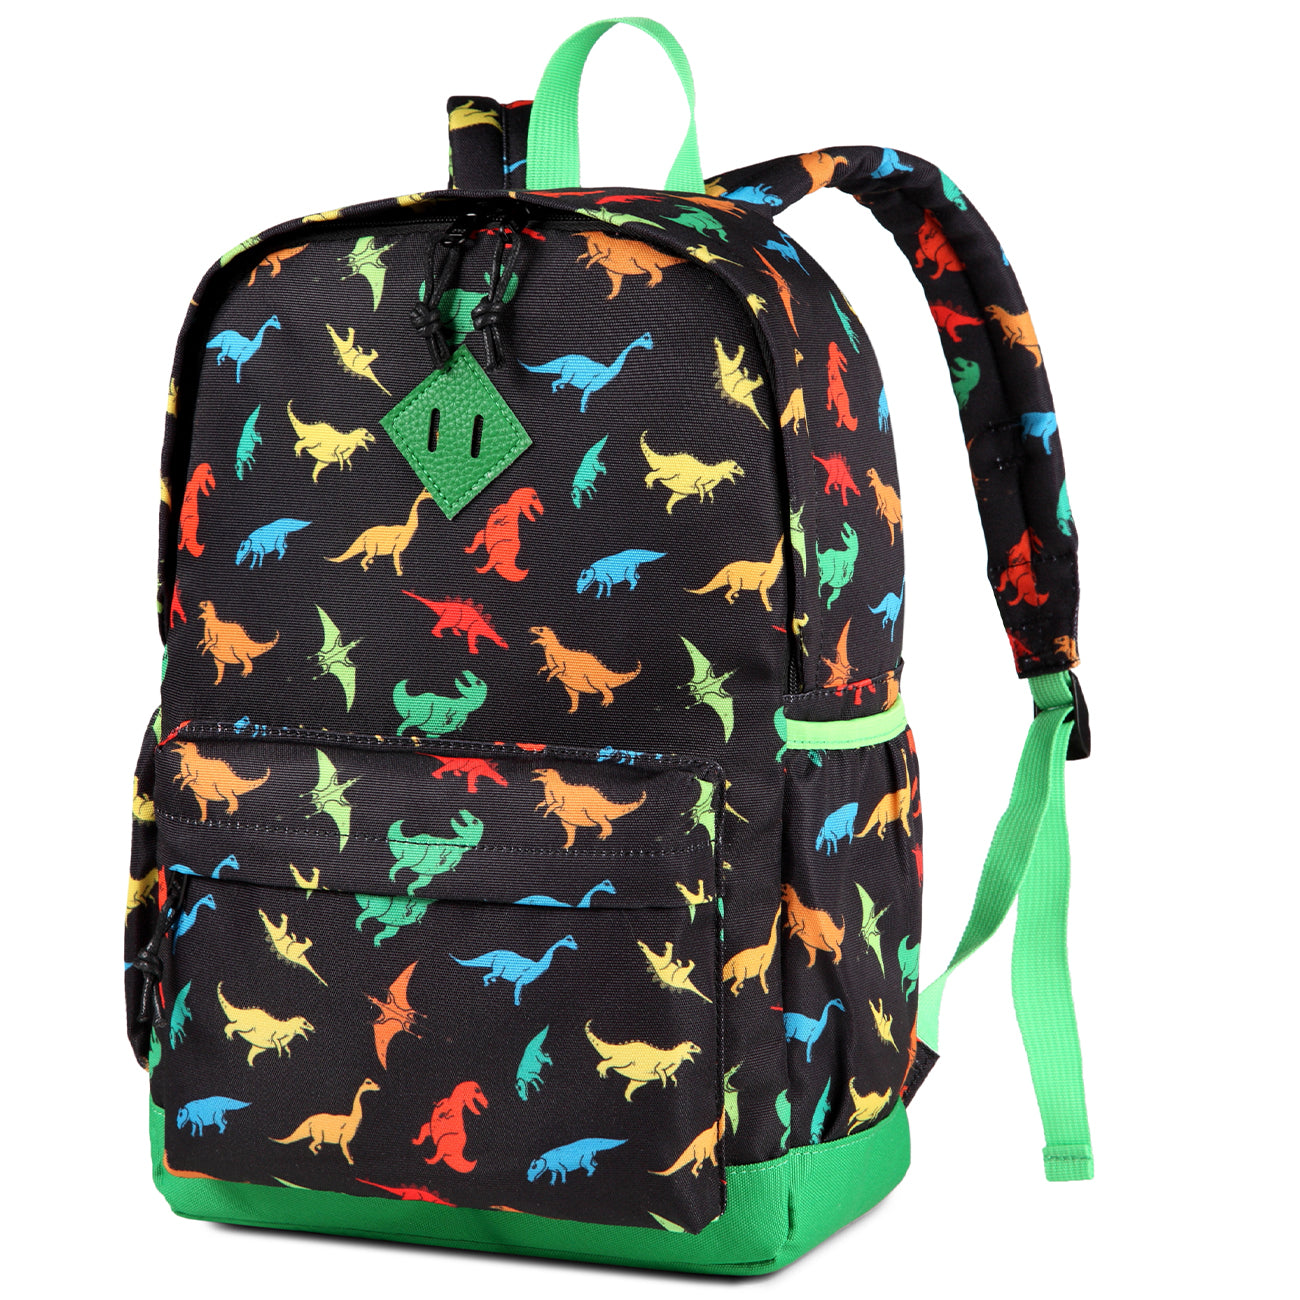 Adorabag Backpack For Kids